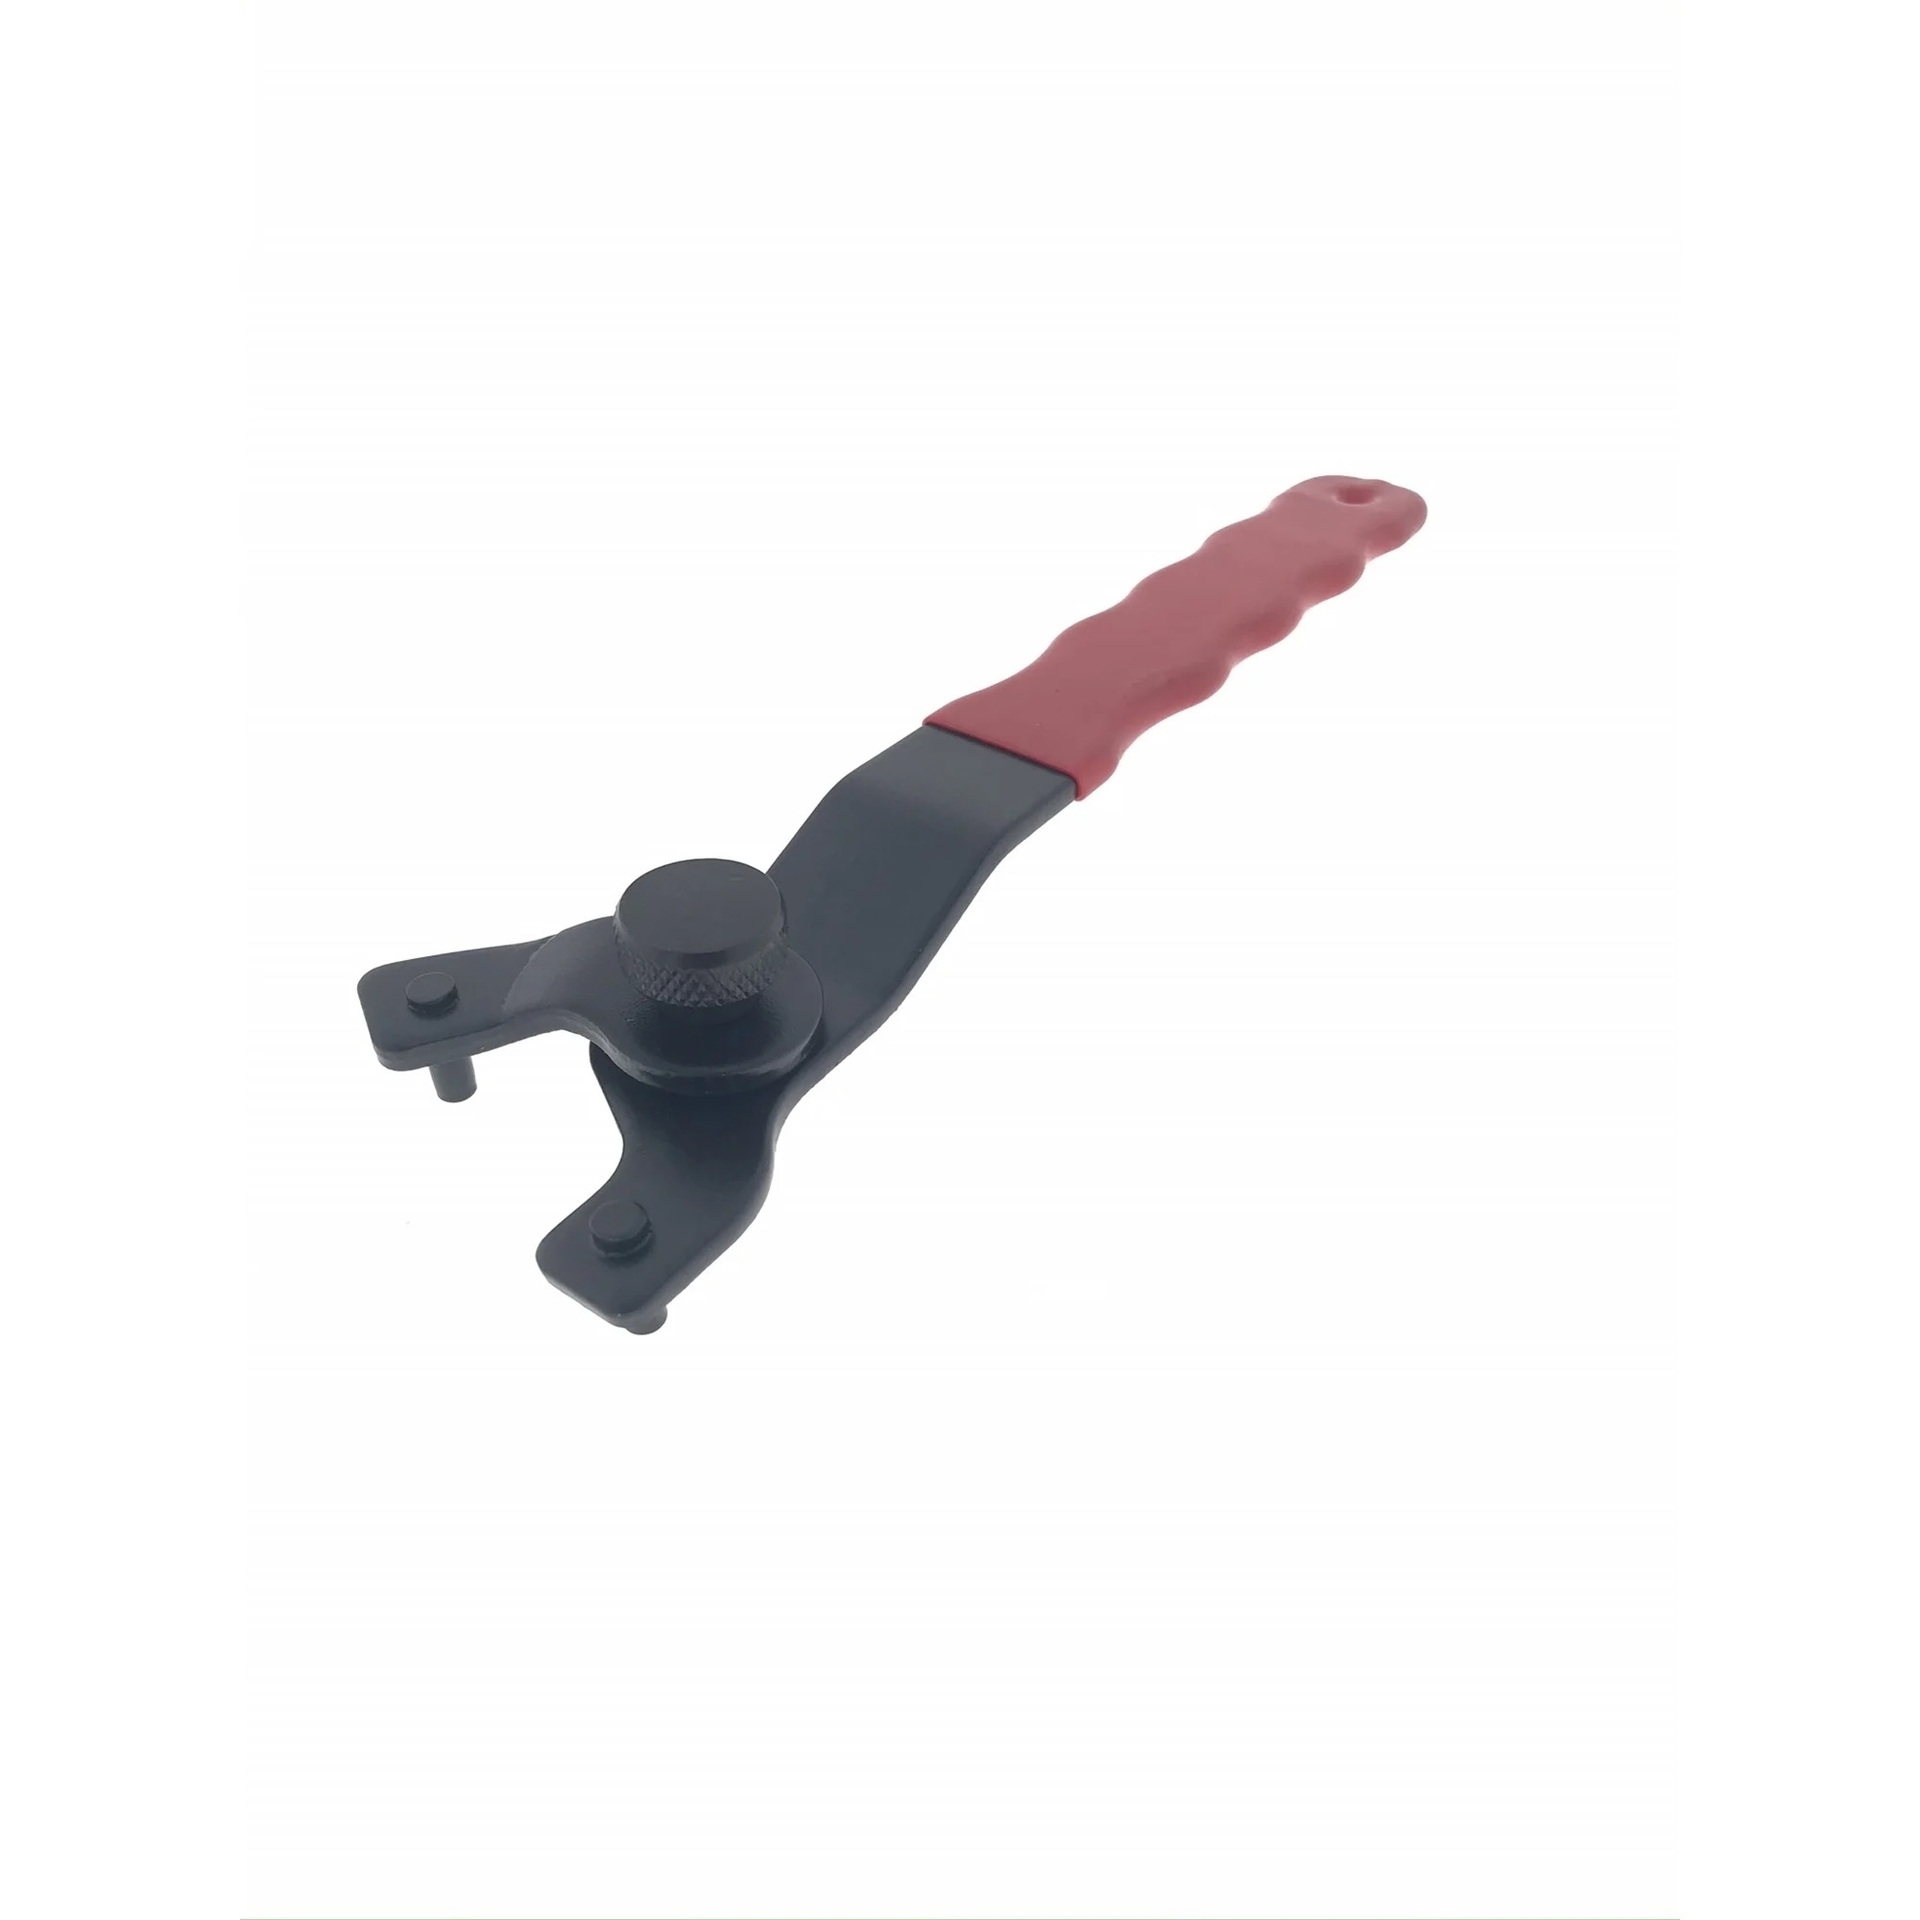 Verstelbare sleutel voor haakse slijper - 18 tot 52 mm - Benson